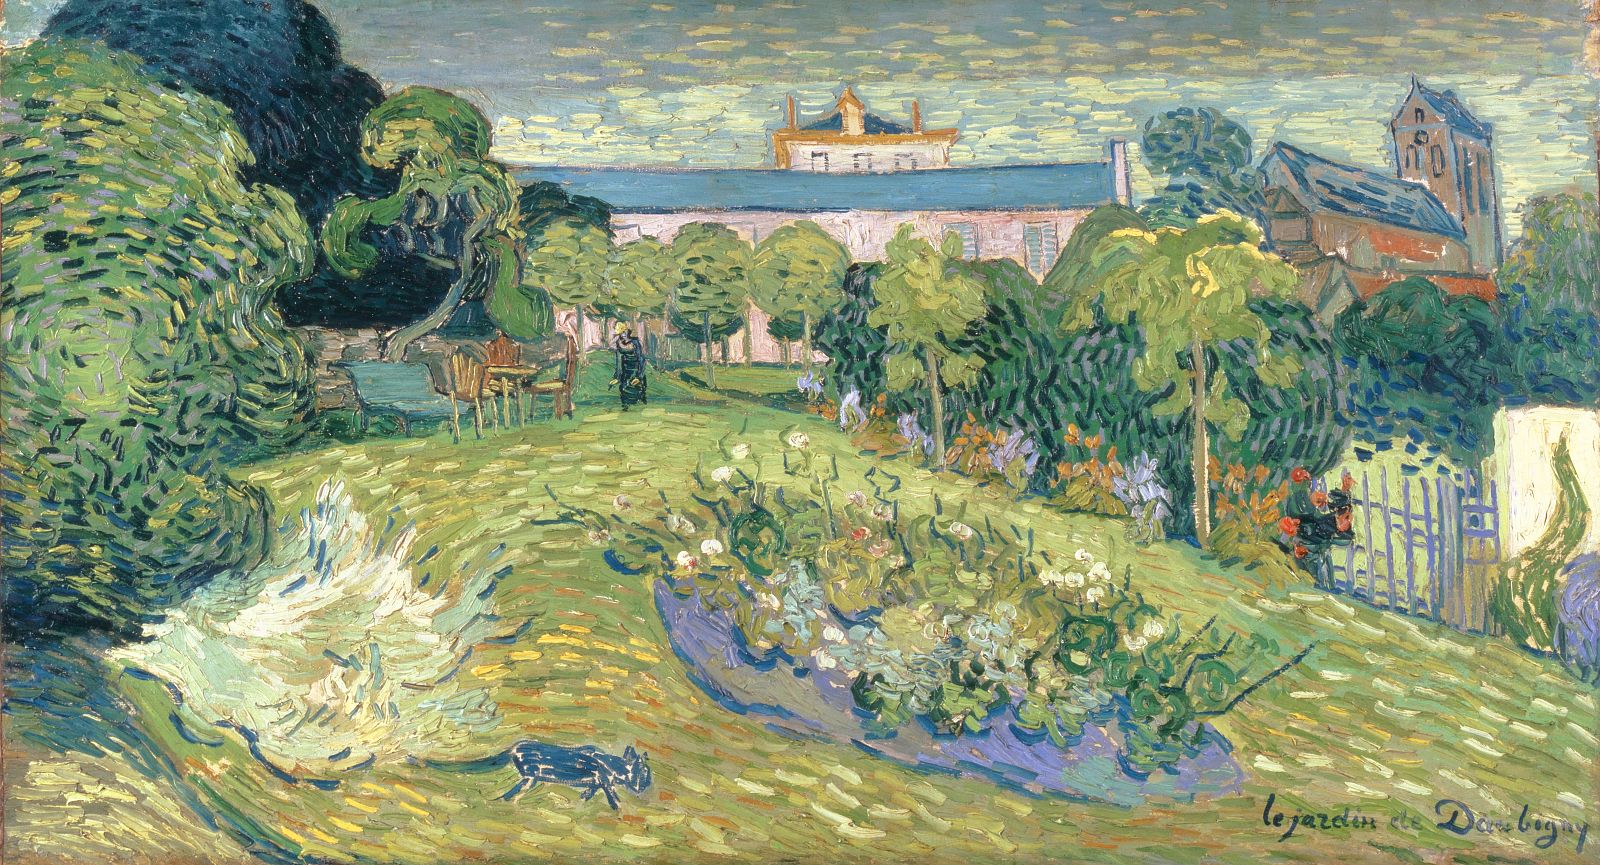 El jardín de Daubigny (1890), Vincent Van Gogh